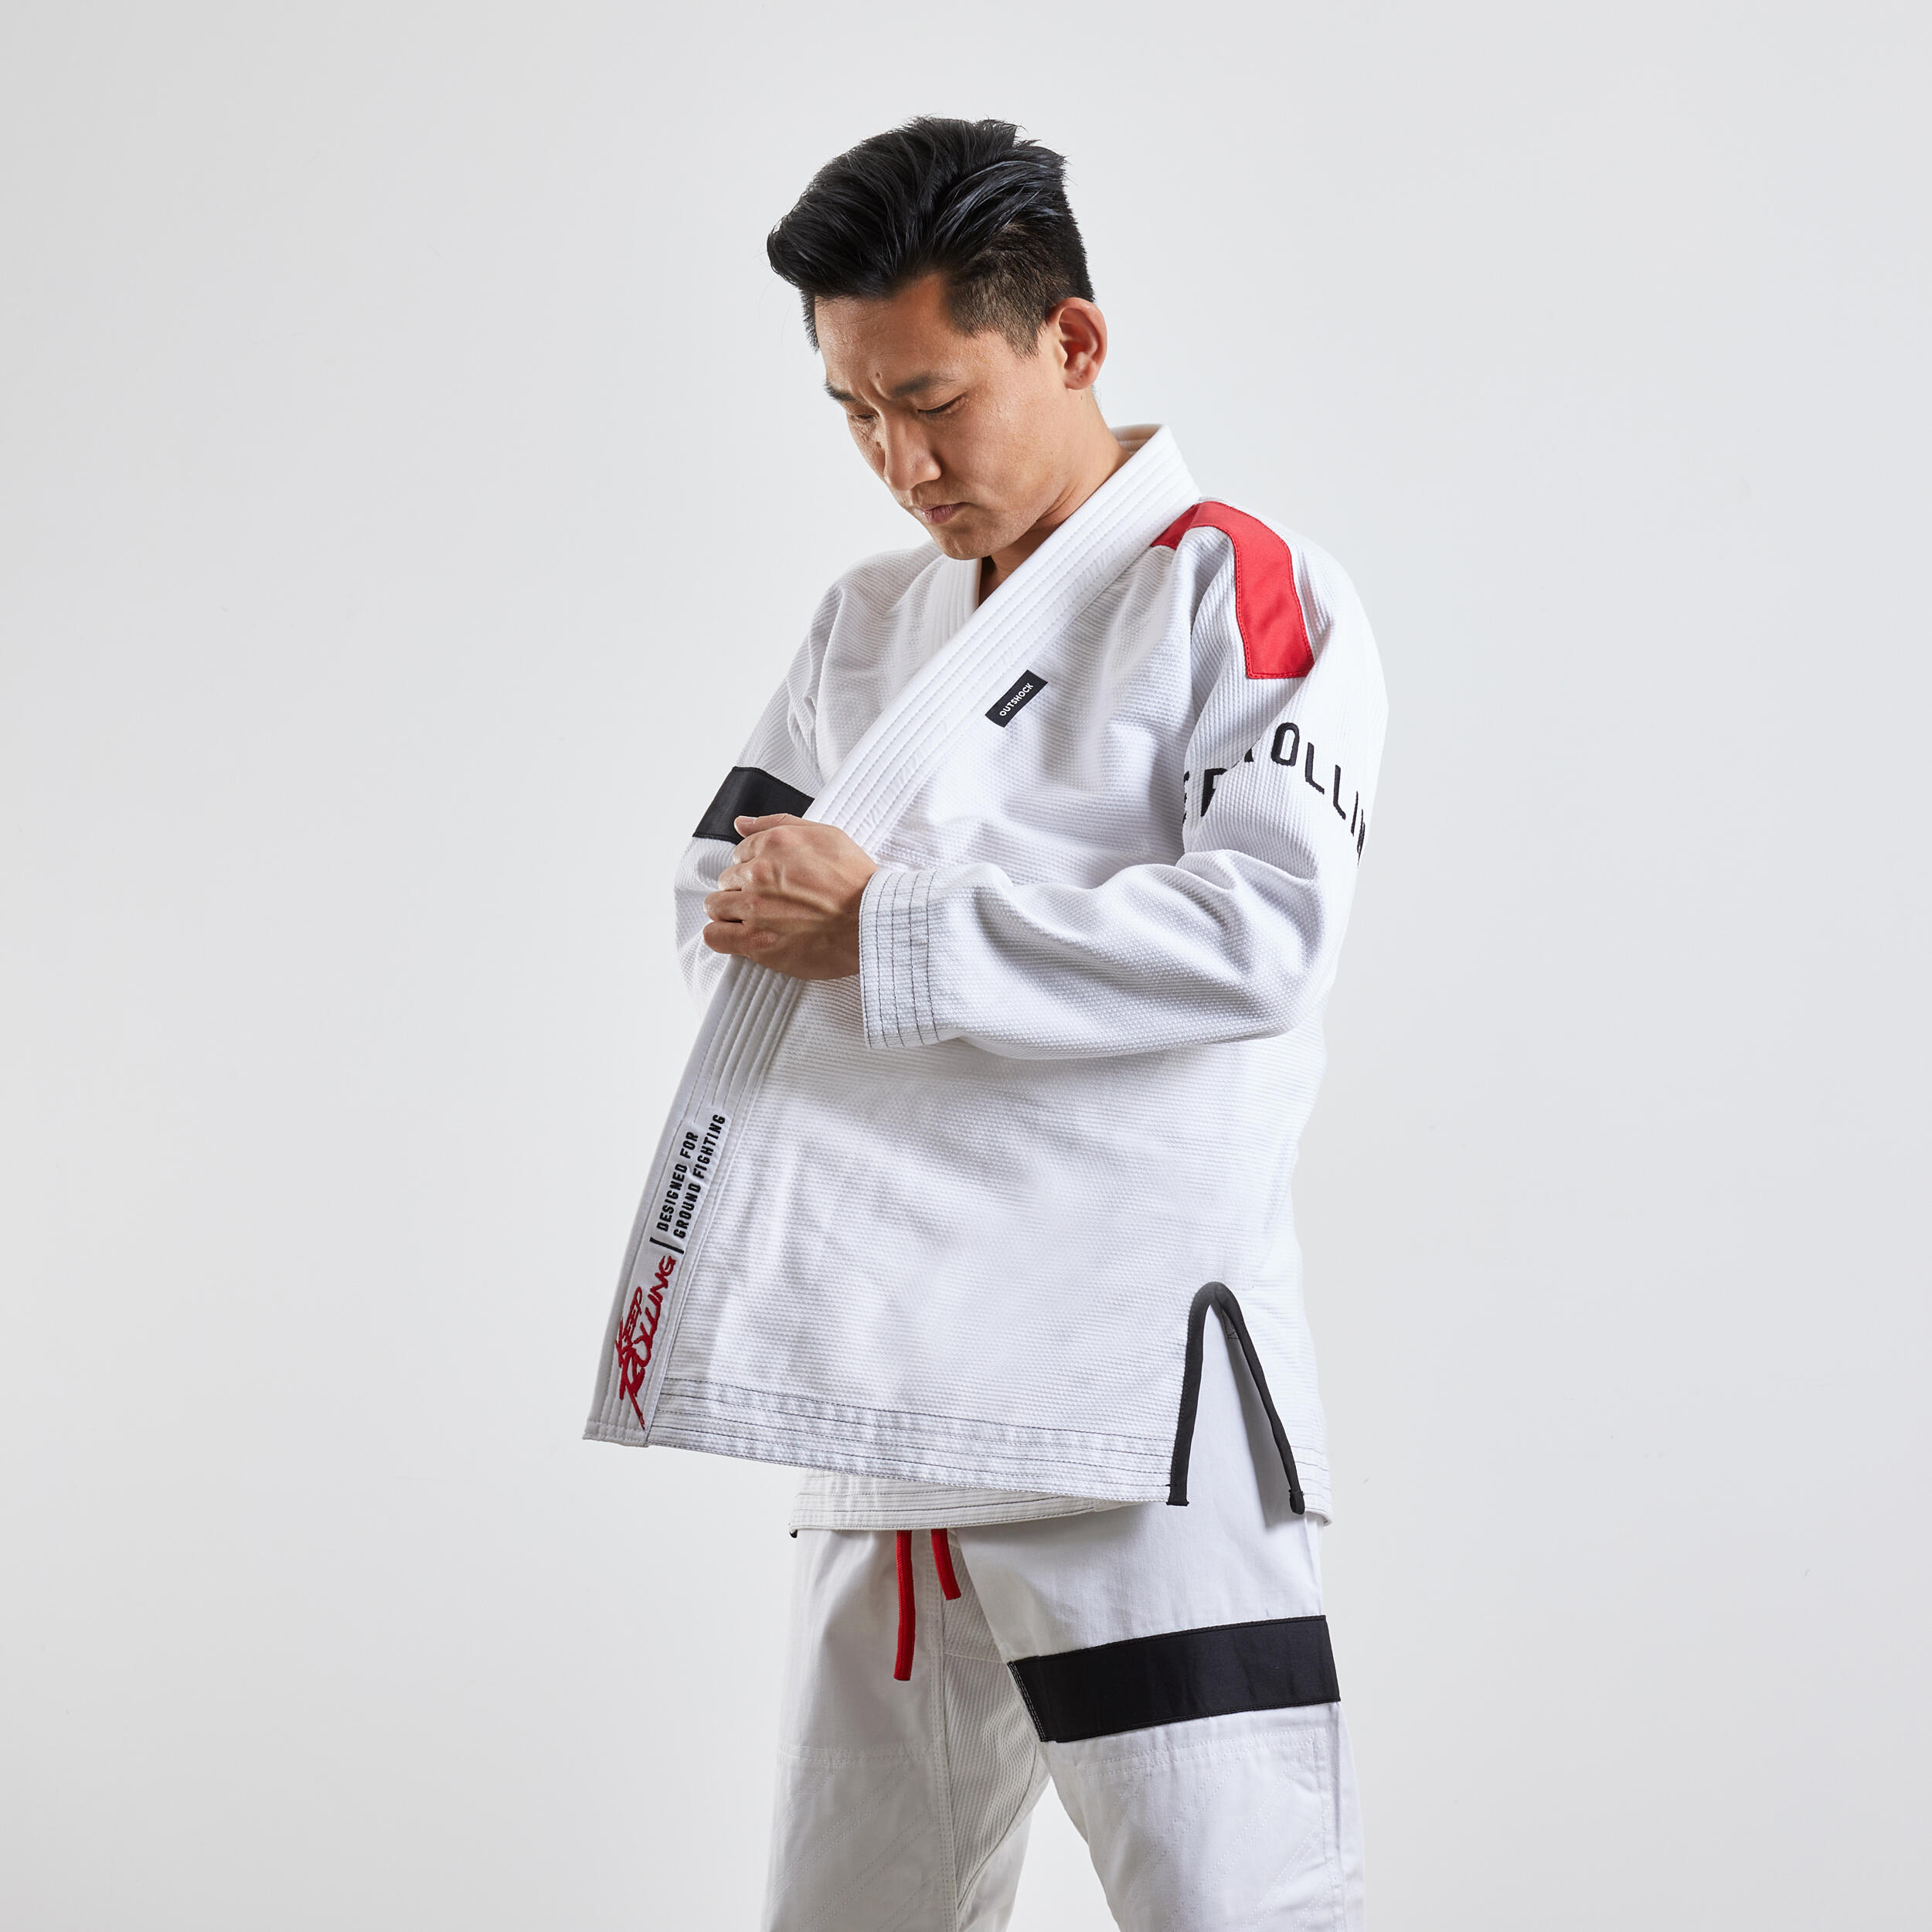 500 Brazilian Jiu-Jitsu Uniform - White 9/9